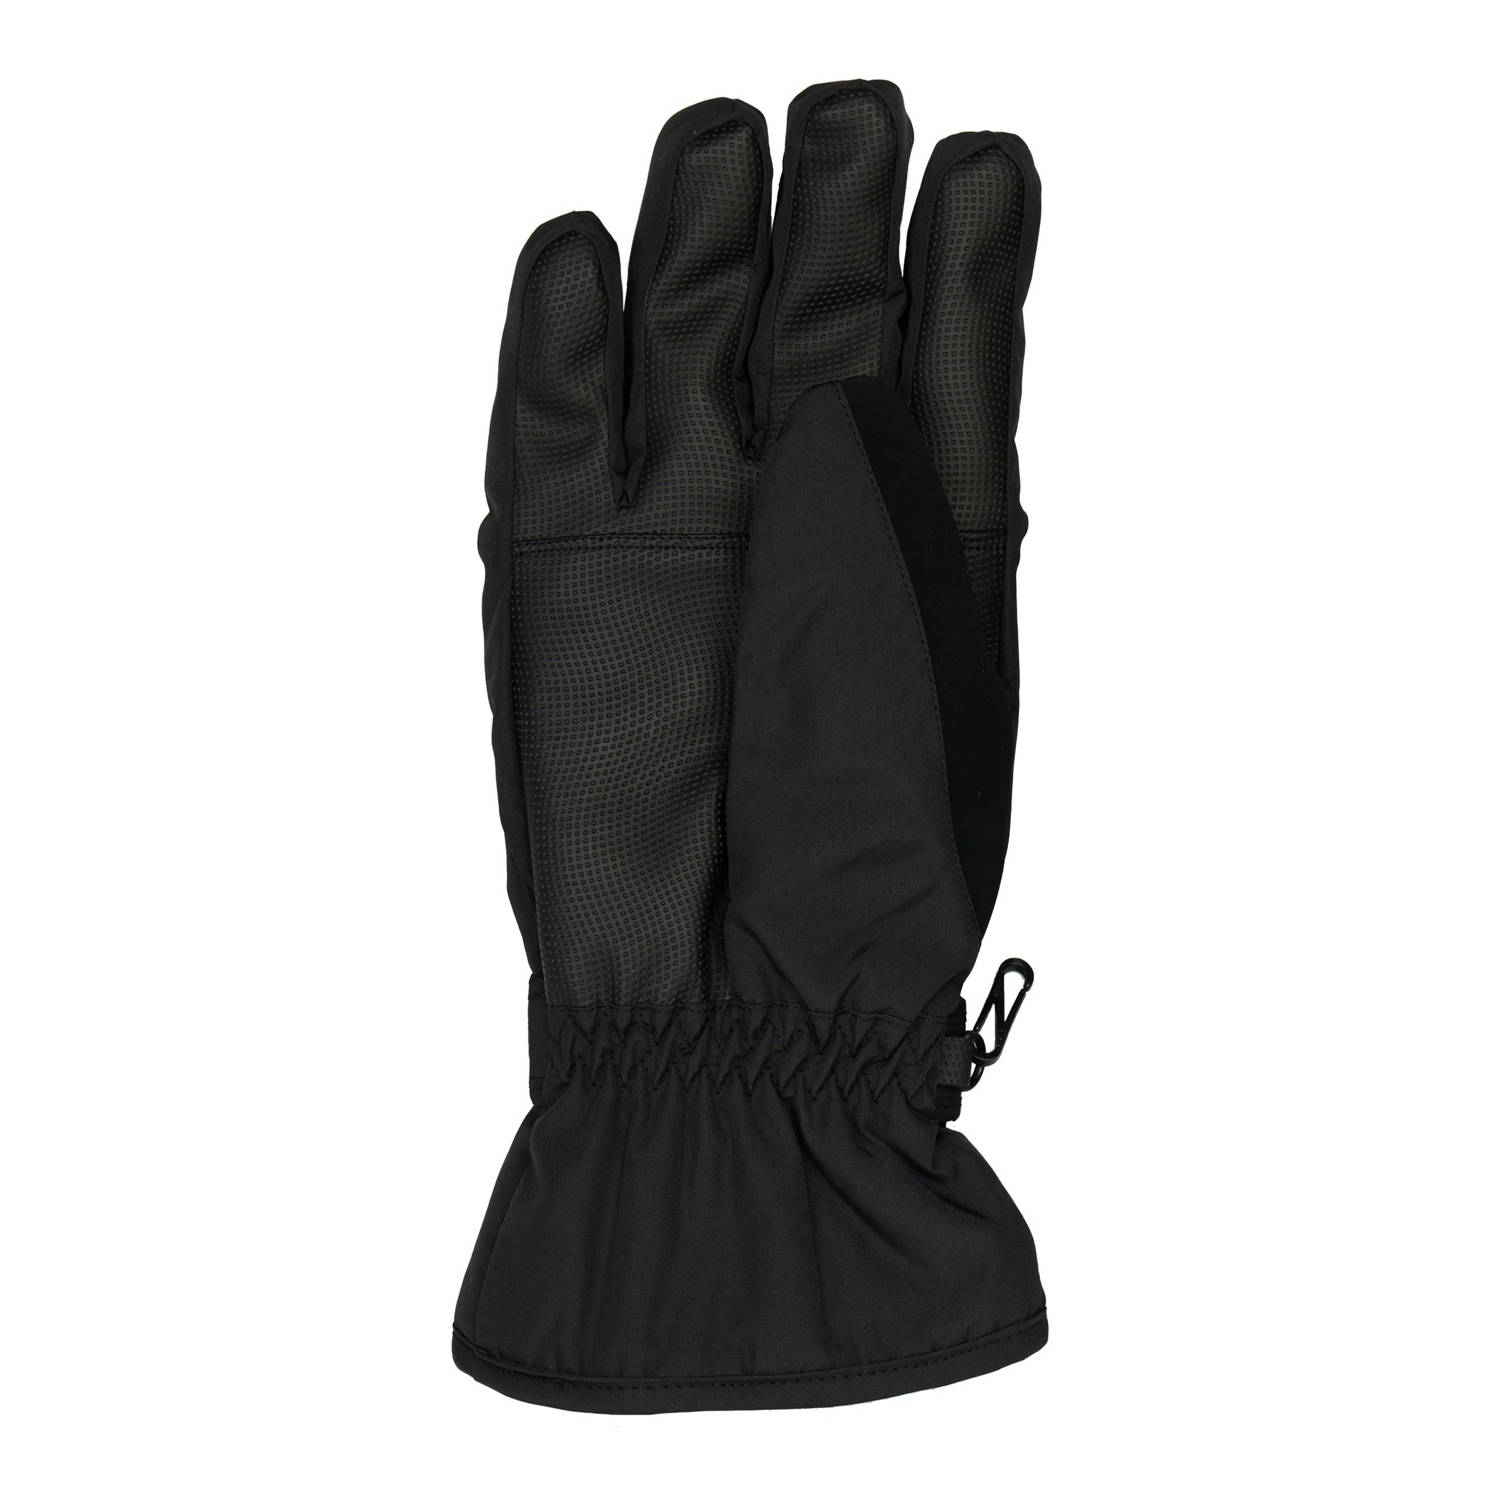 Protest handschoenen zwart